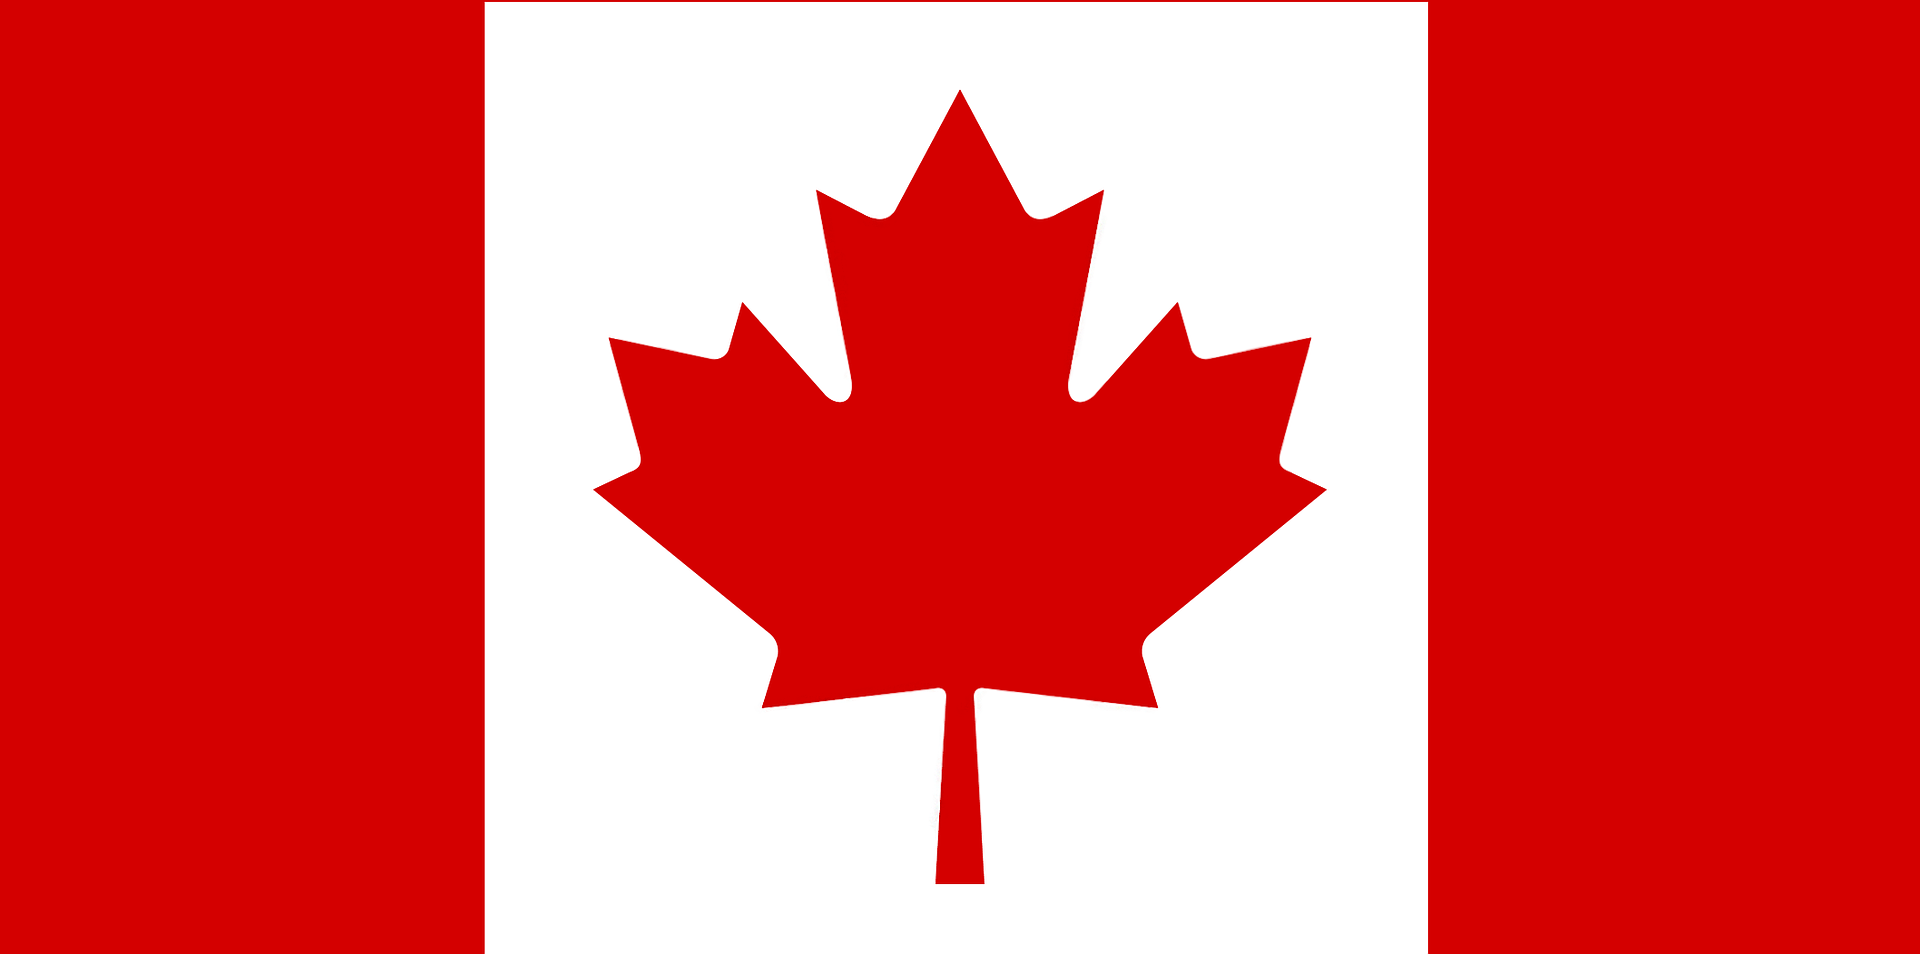 Canada: CSSA packaging compliance update